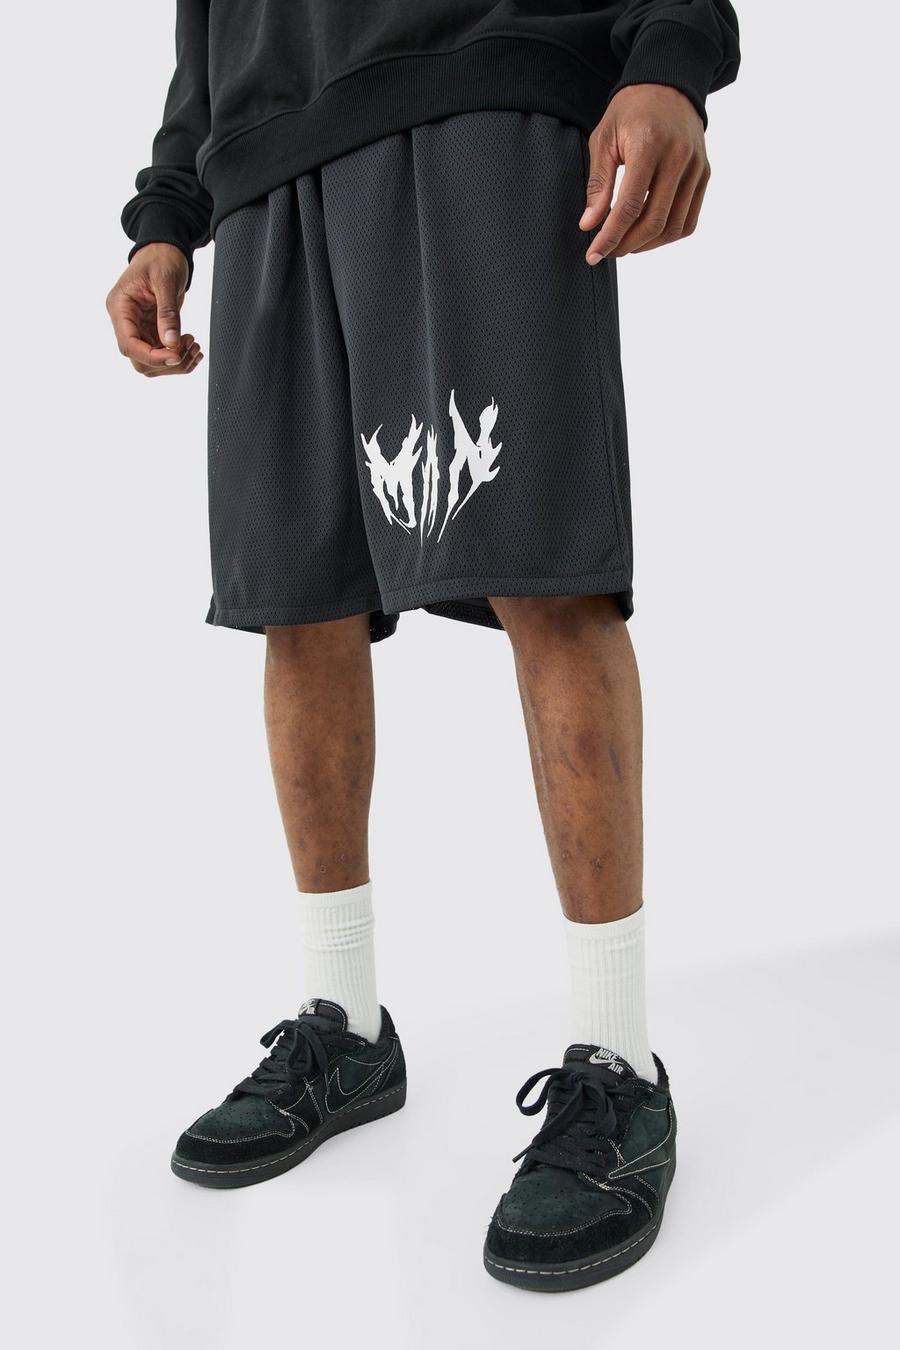 Pantalón corto Tall MAN de airtéx con estampado de baloncesto, Black